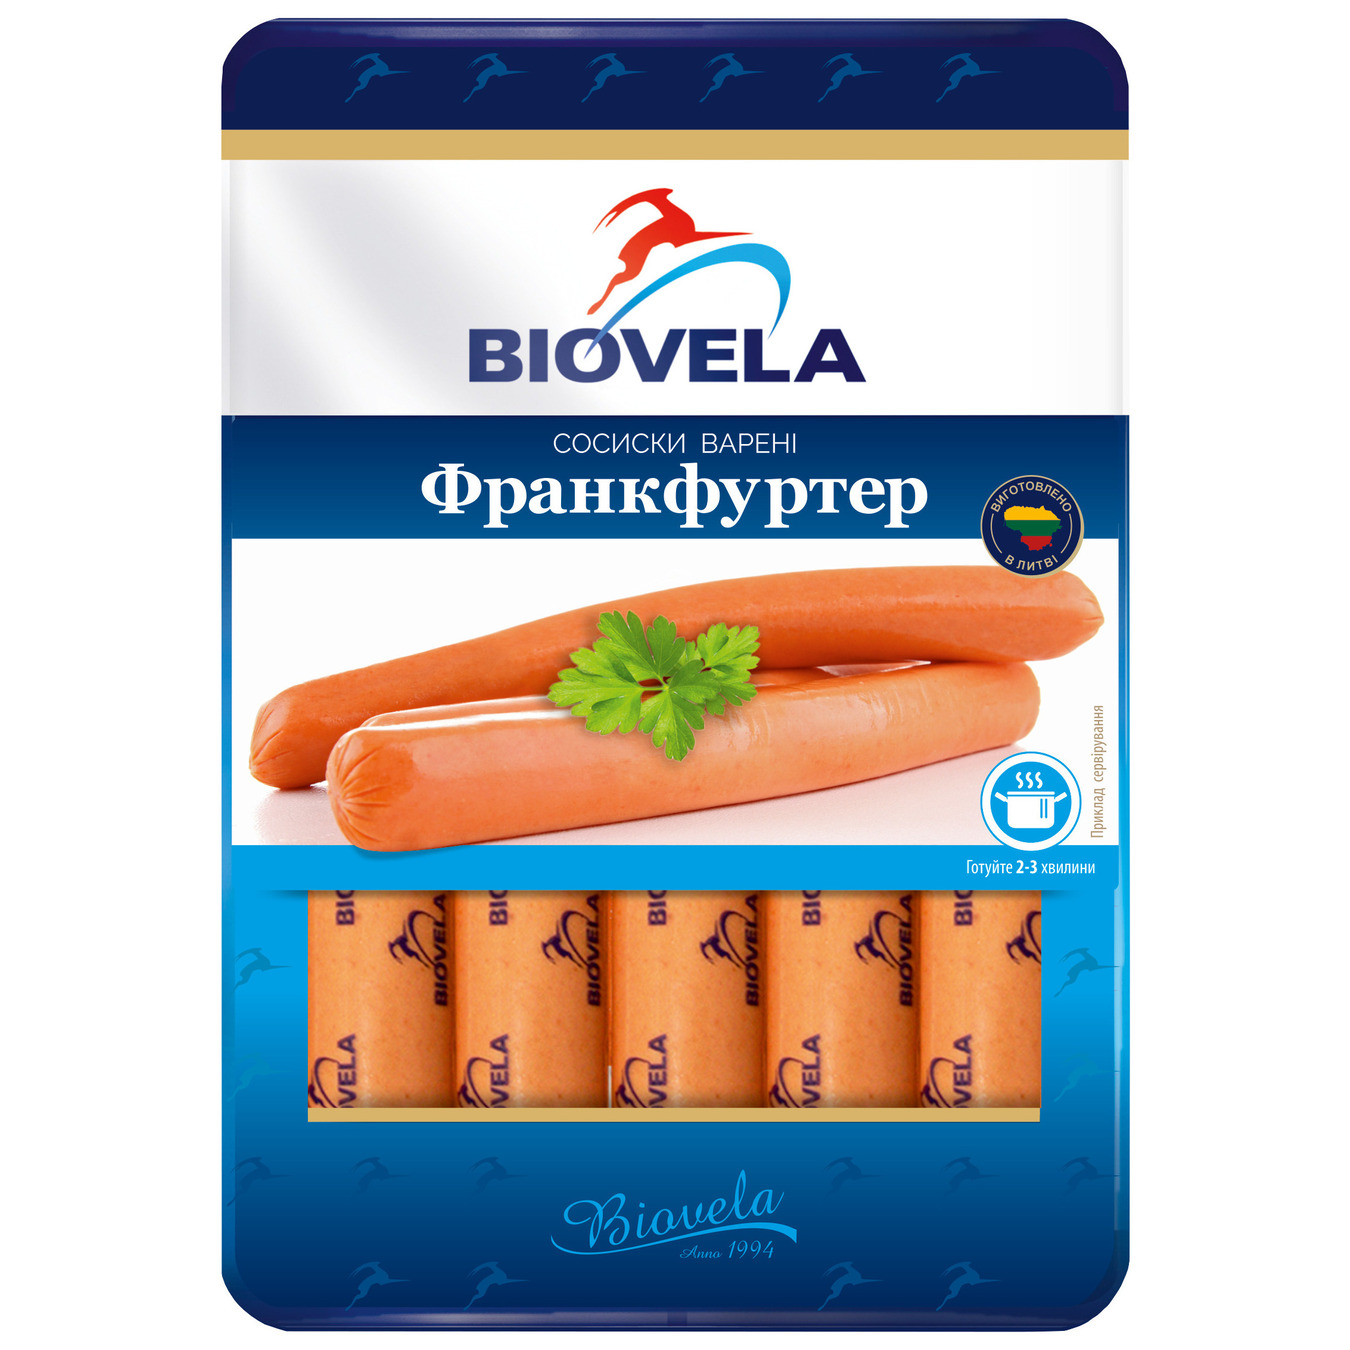 Boiled Biovela Frankfurter sausages 370g